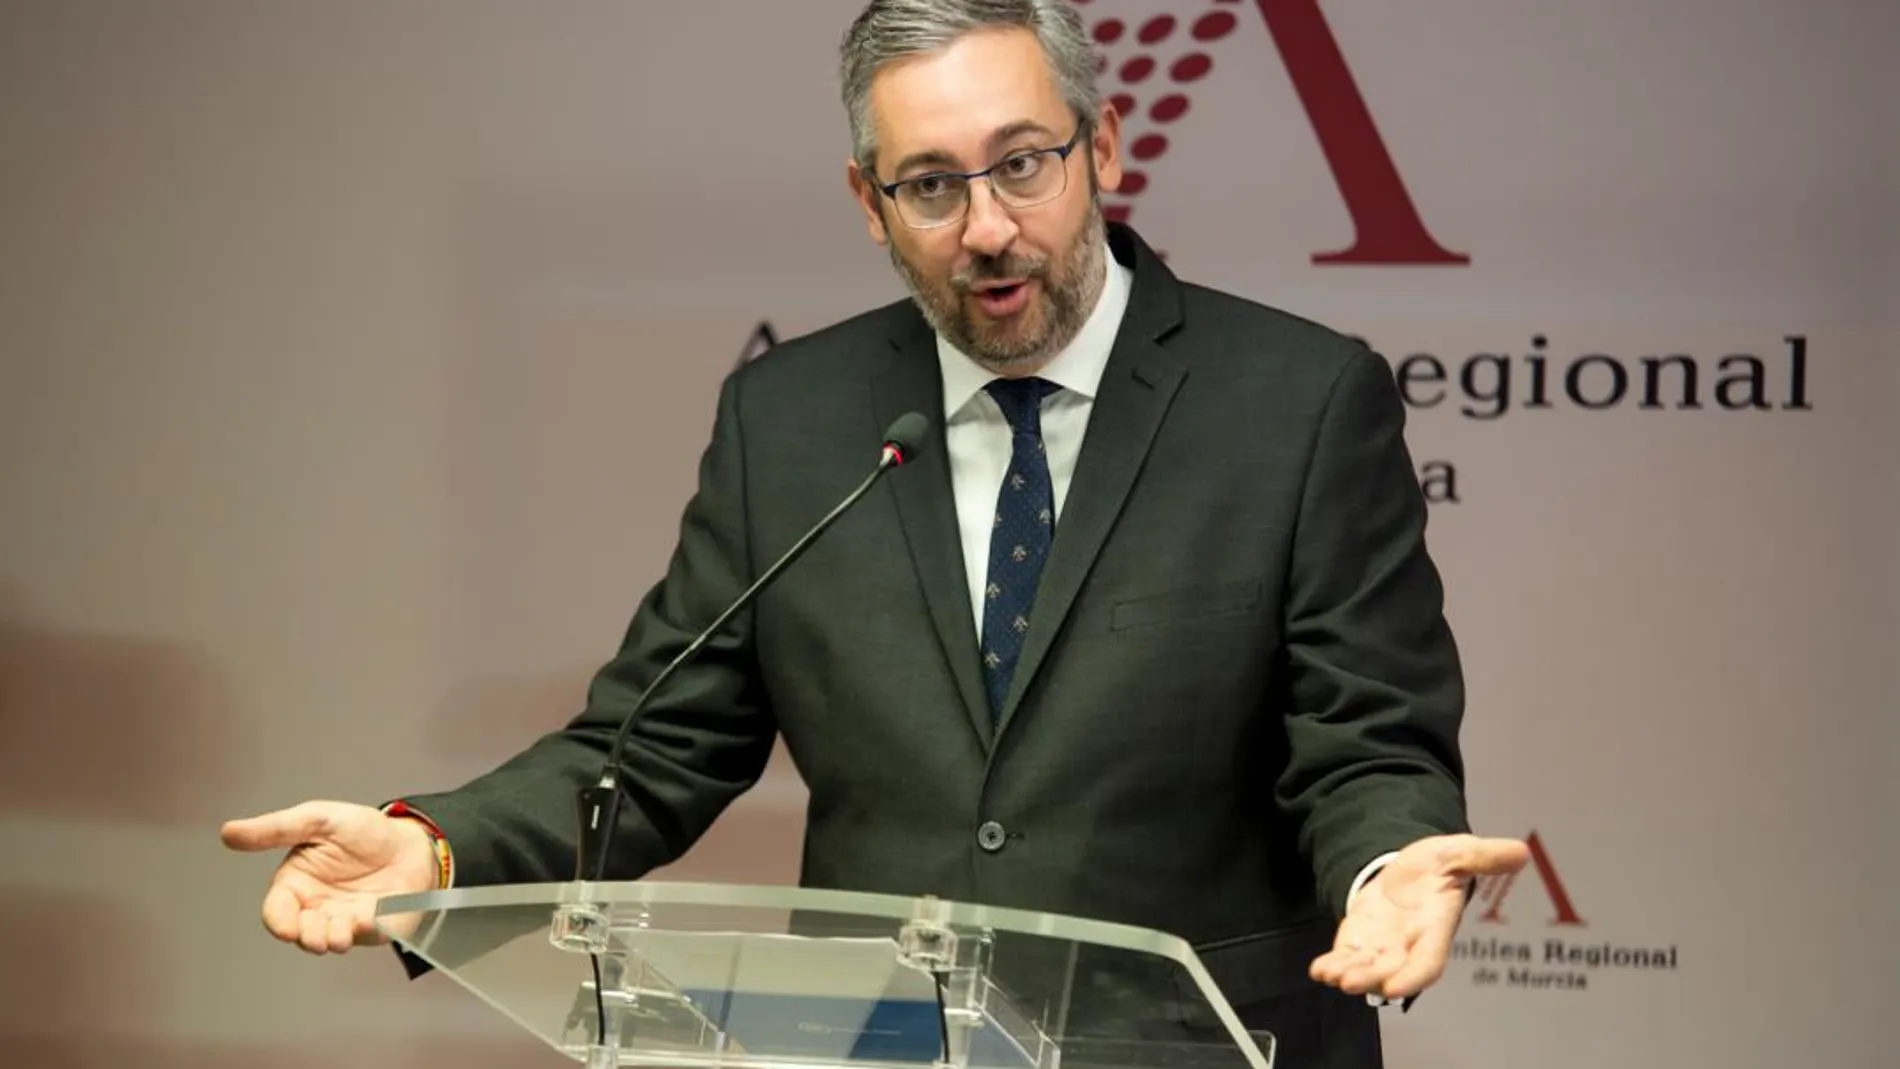 El portavoz del PP en la Asamblea, Víctor Martínez, acusó a la formación morada de «embarrar» uno de los Pactos más consensuados de la legislatura, a sabiendas de que es «bueno y positivo para todos»